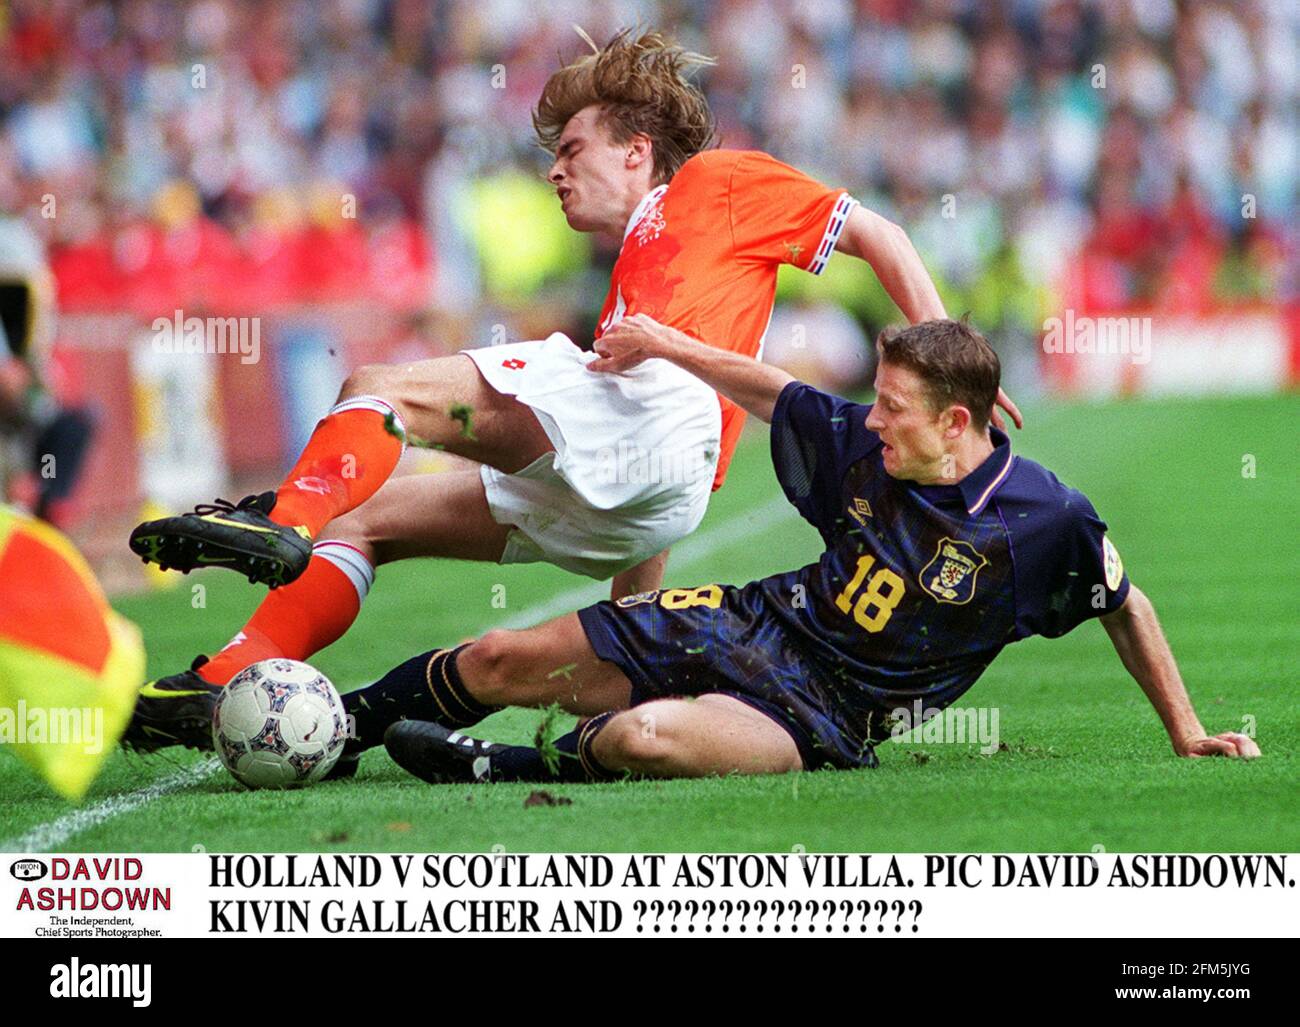 Les Scotlands Kevin Gallacher et Hollands Jordi Cruyff se battent pour le Bal dans le match Euro 96 des deux nations à Aston Villa le score final a été un nul nul nul Banque D'Images